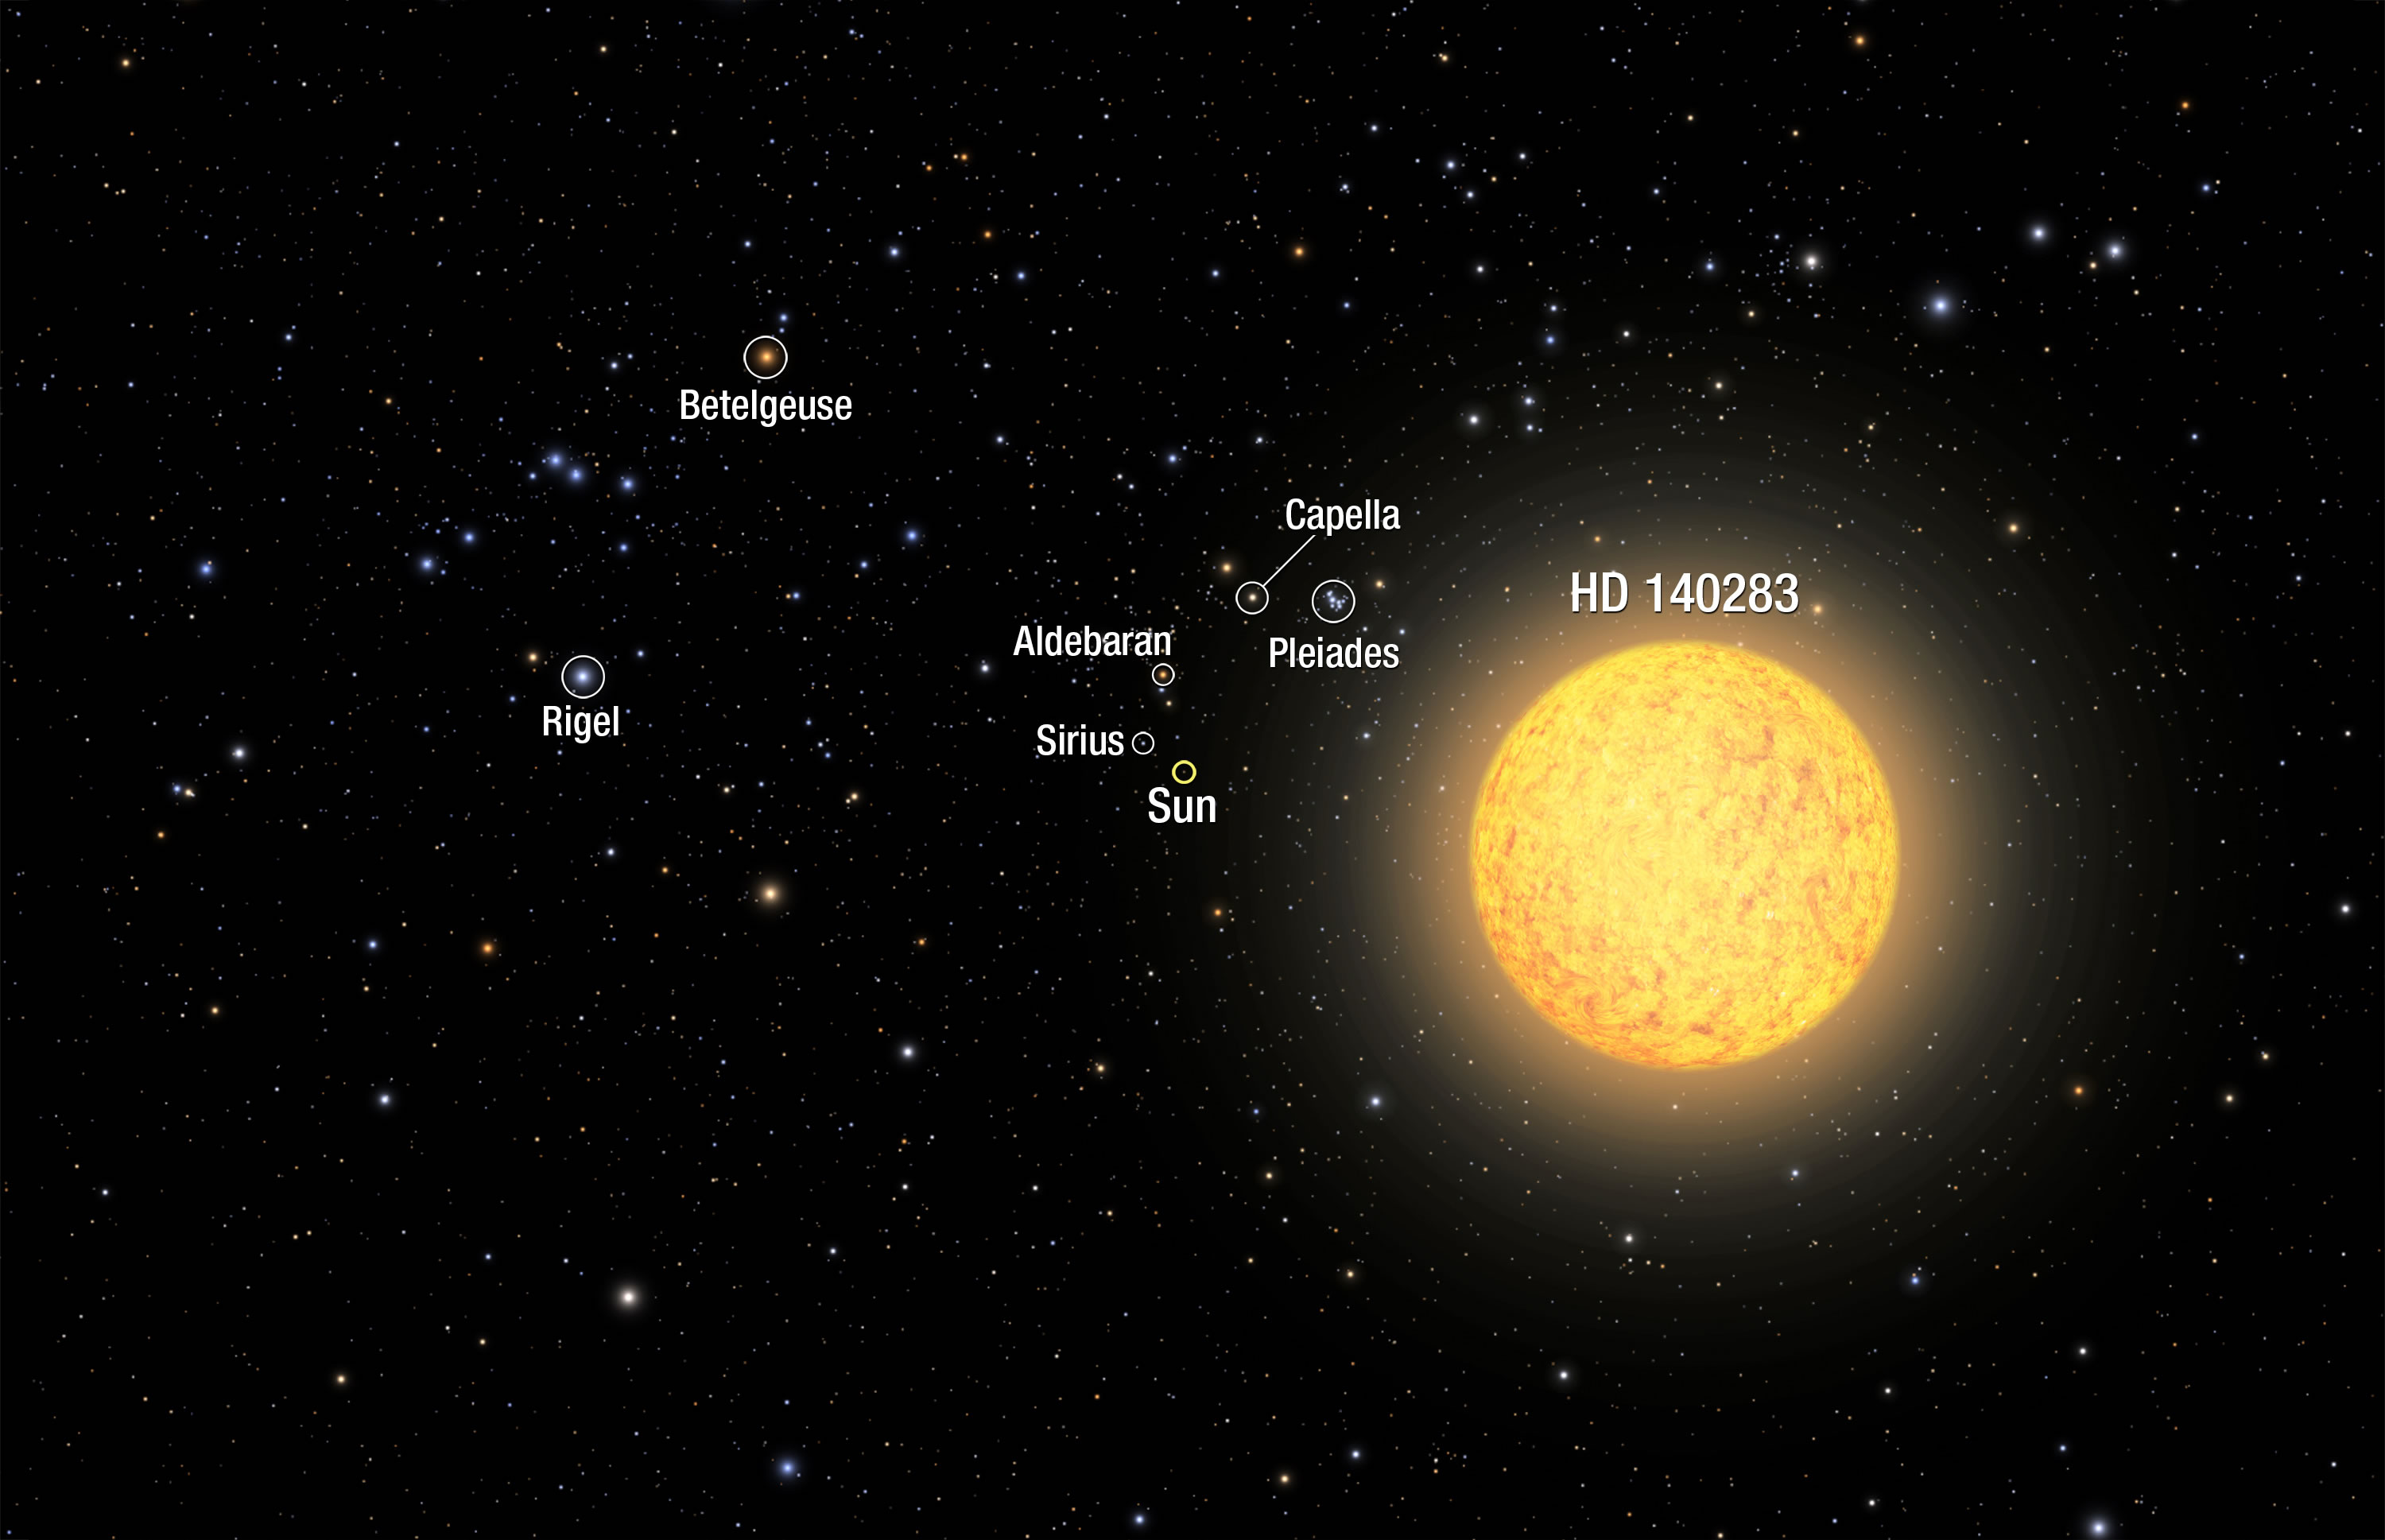 天文学家发现最古老恒星HD 140283的年龄为144.6亿岁 比宇宙还古老